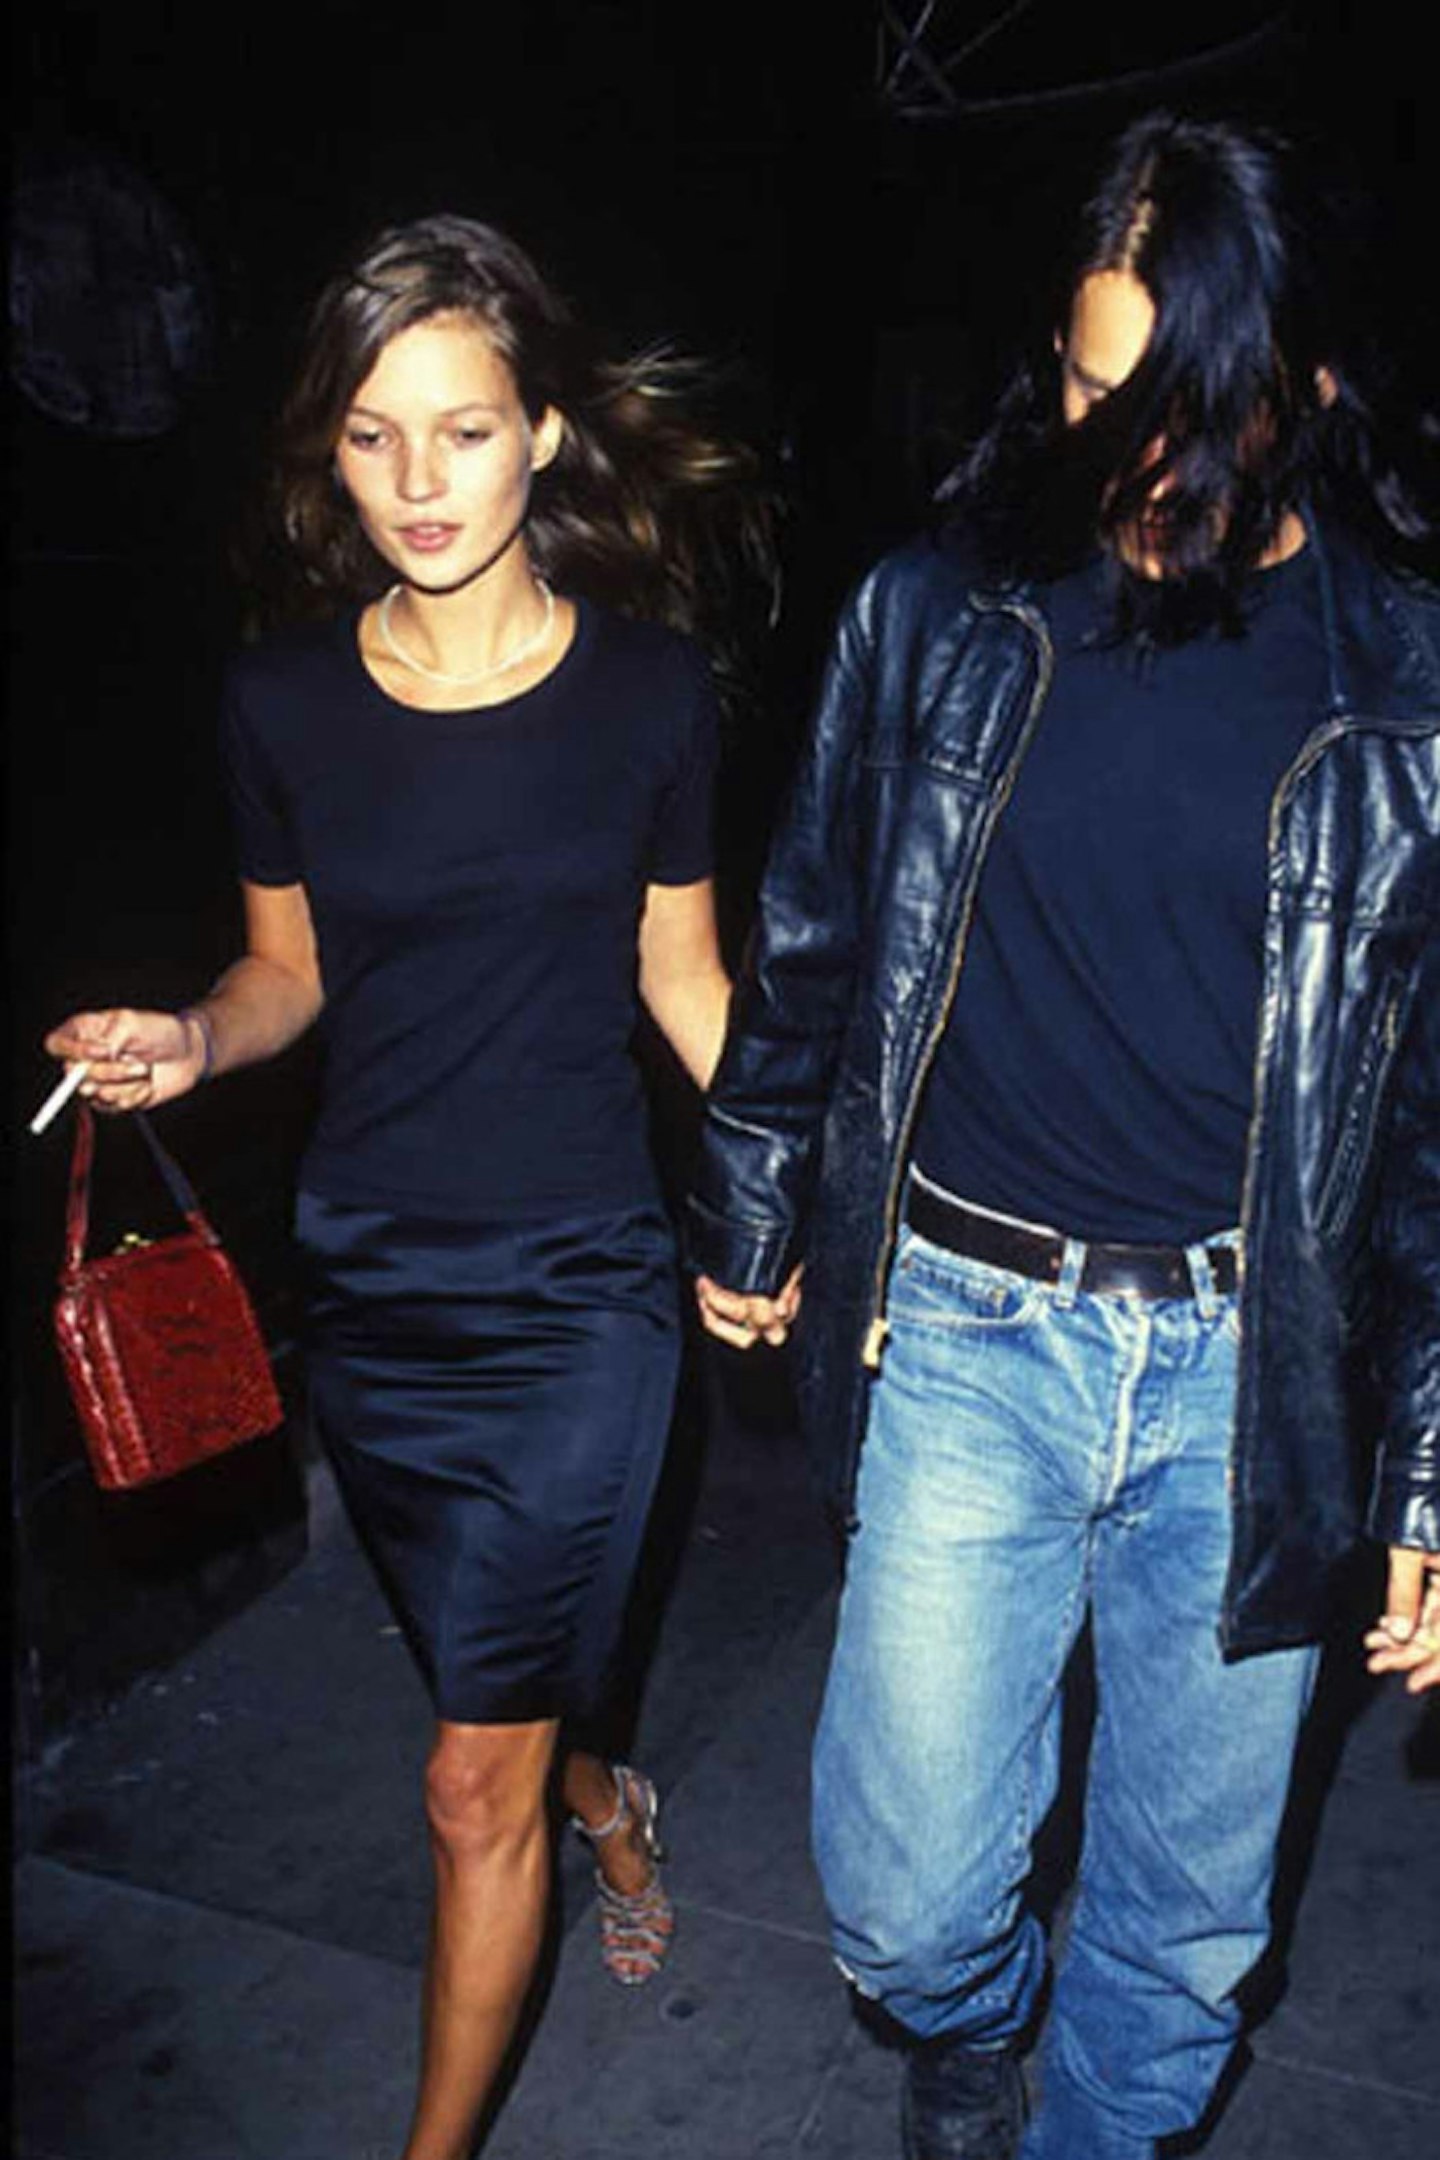 55Kate Moss style black skirt 1995